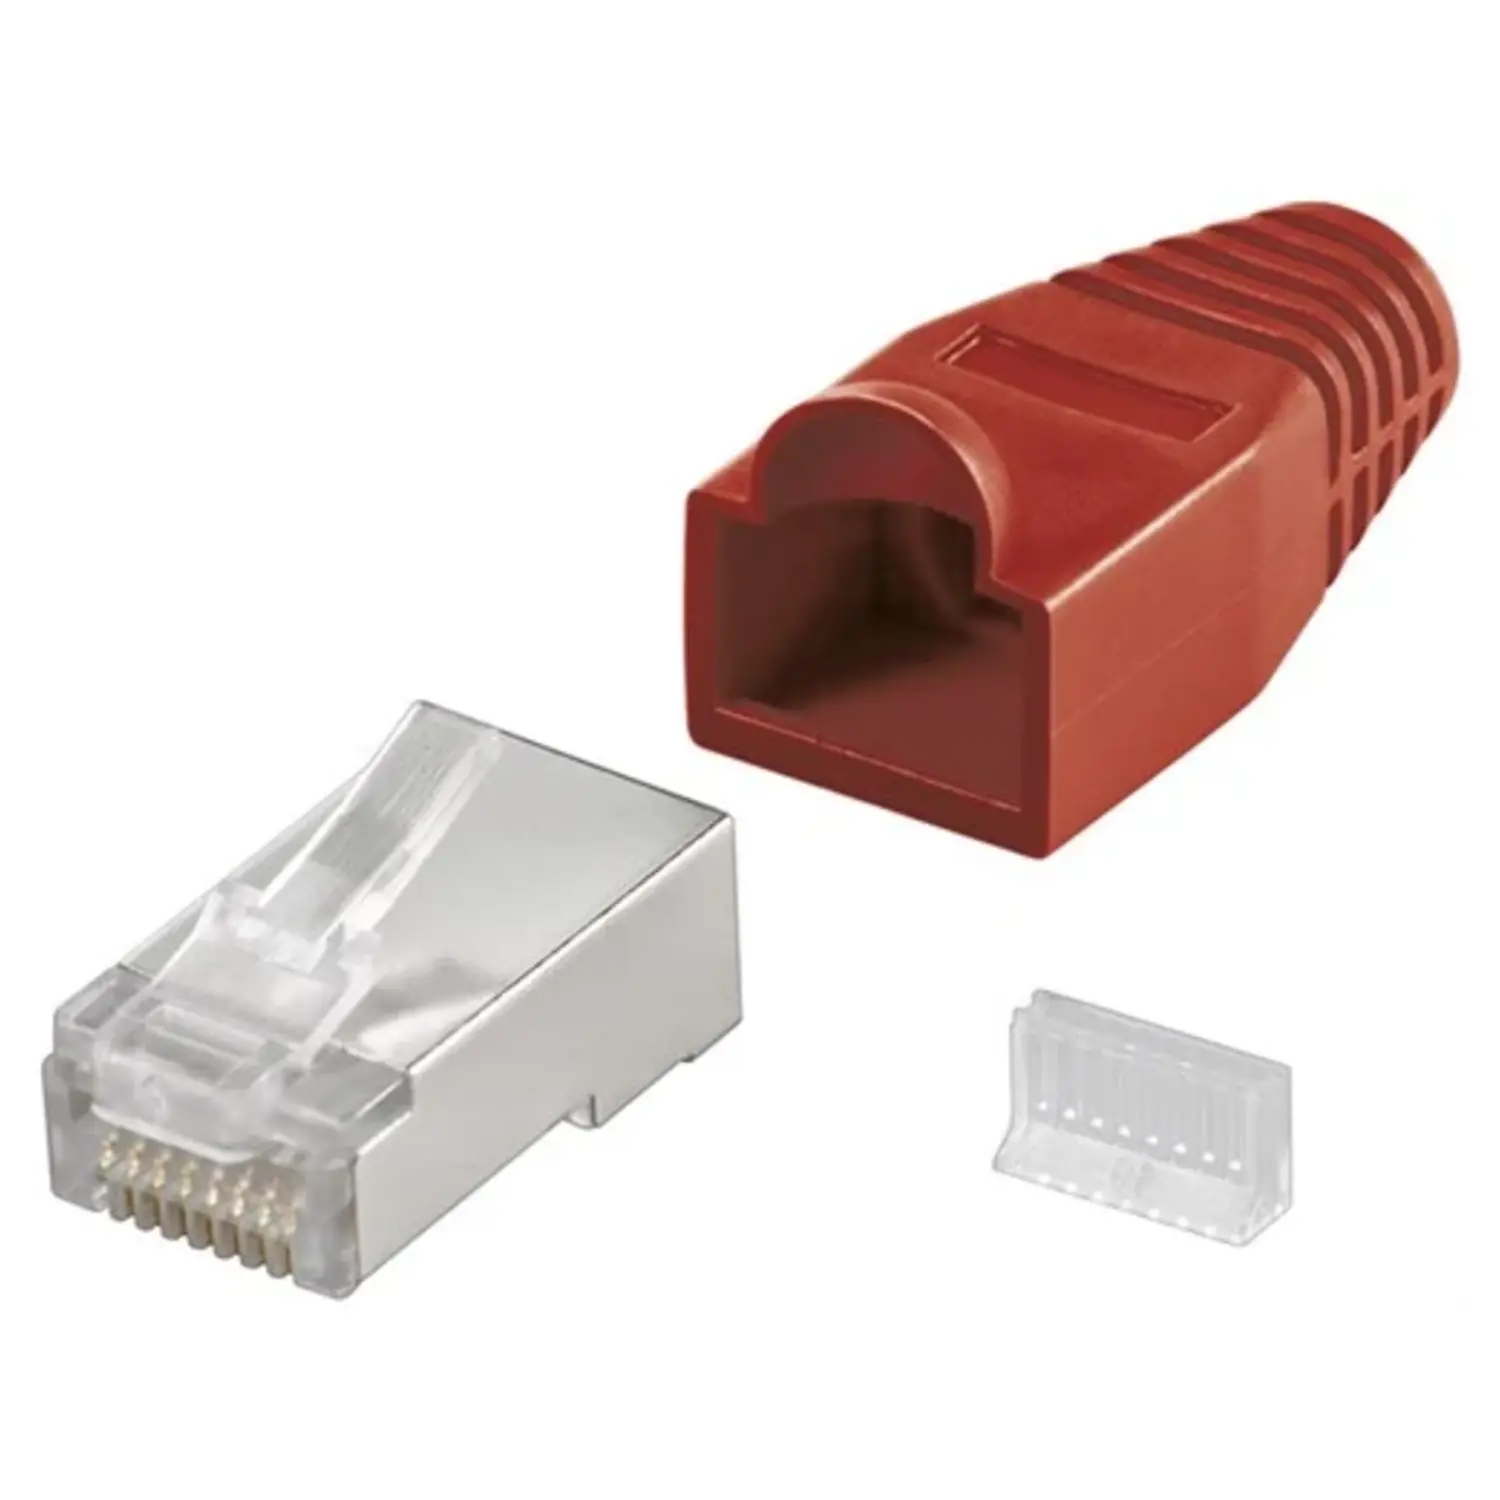 immagine del prodotto spina rj45 cat 5e plug di rete schermato per cavo tondo con guaina rosso